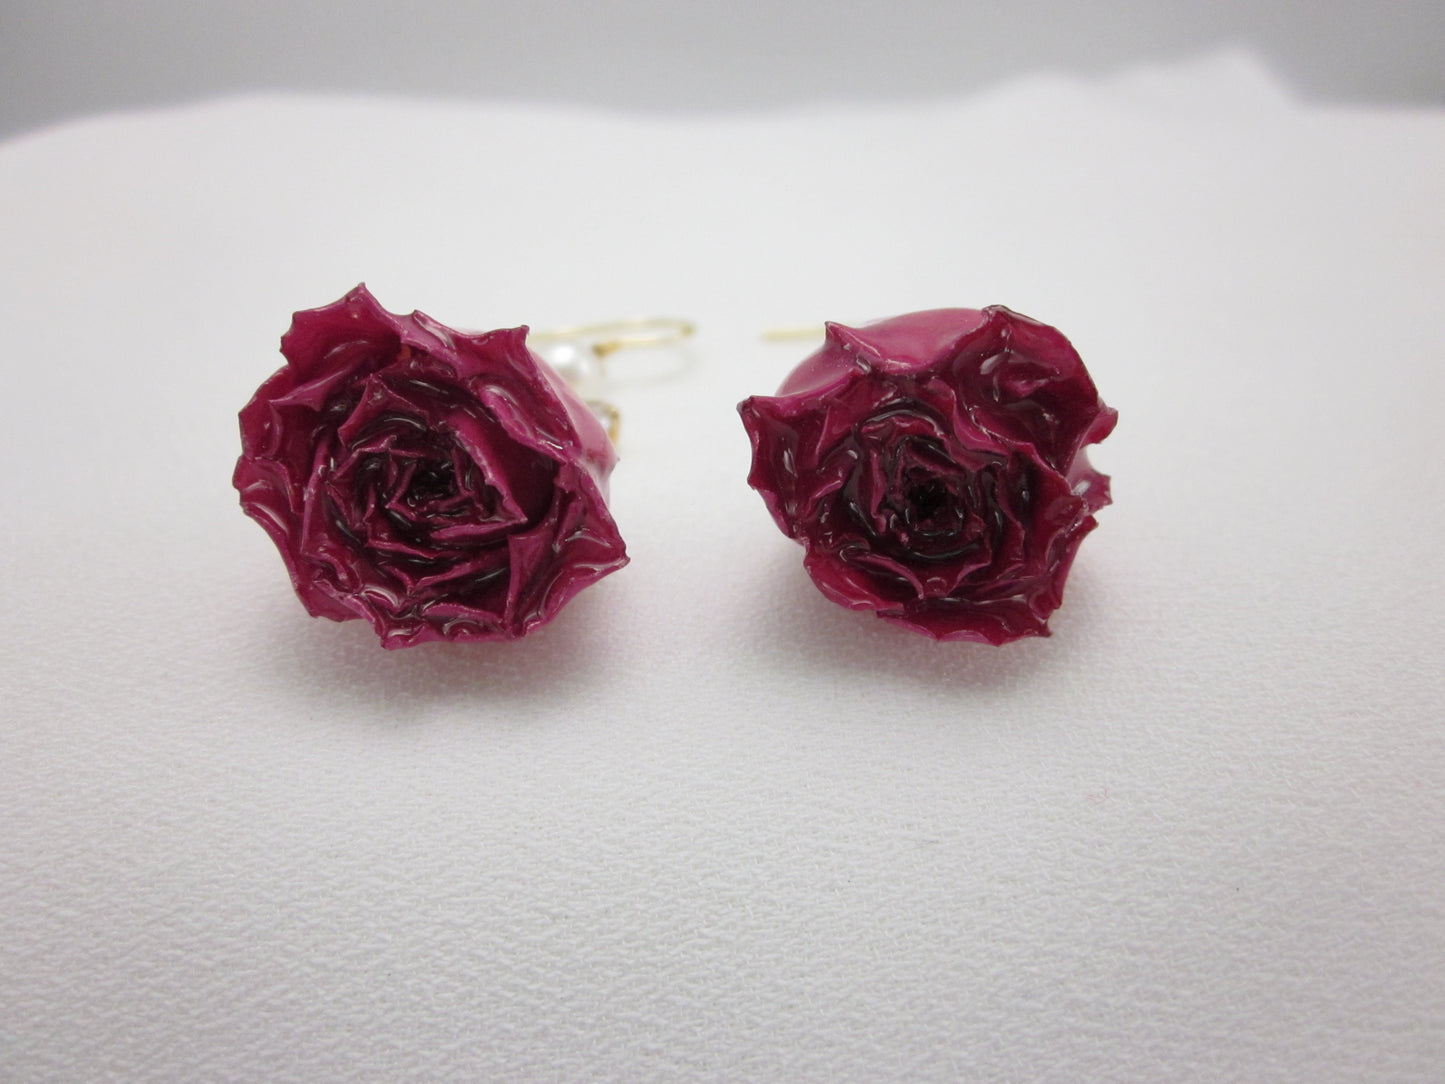 Dried Rose Earrings - Red Crystal Peal